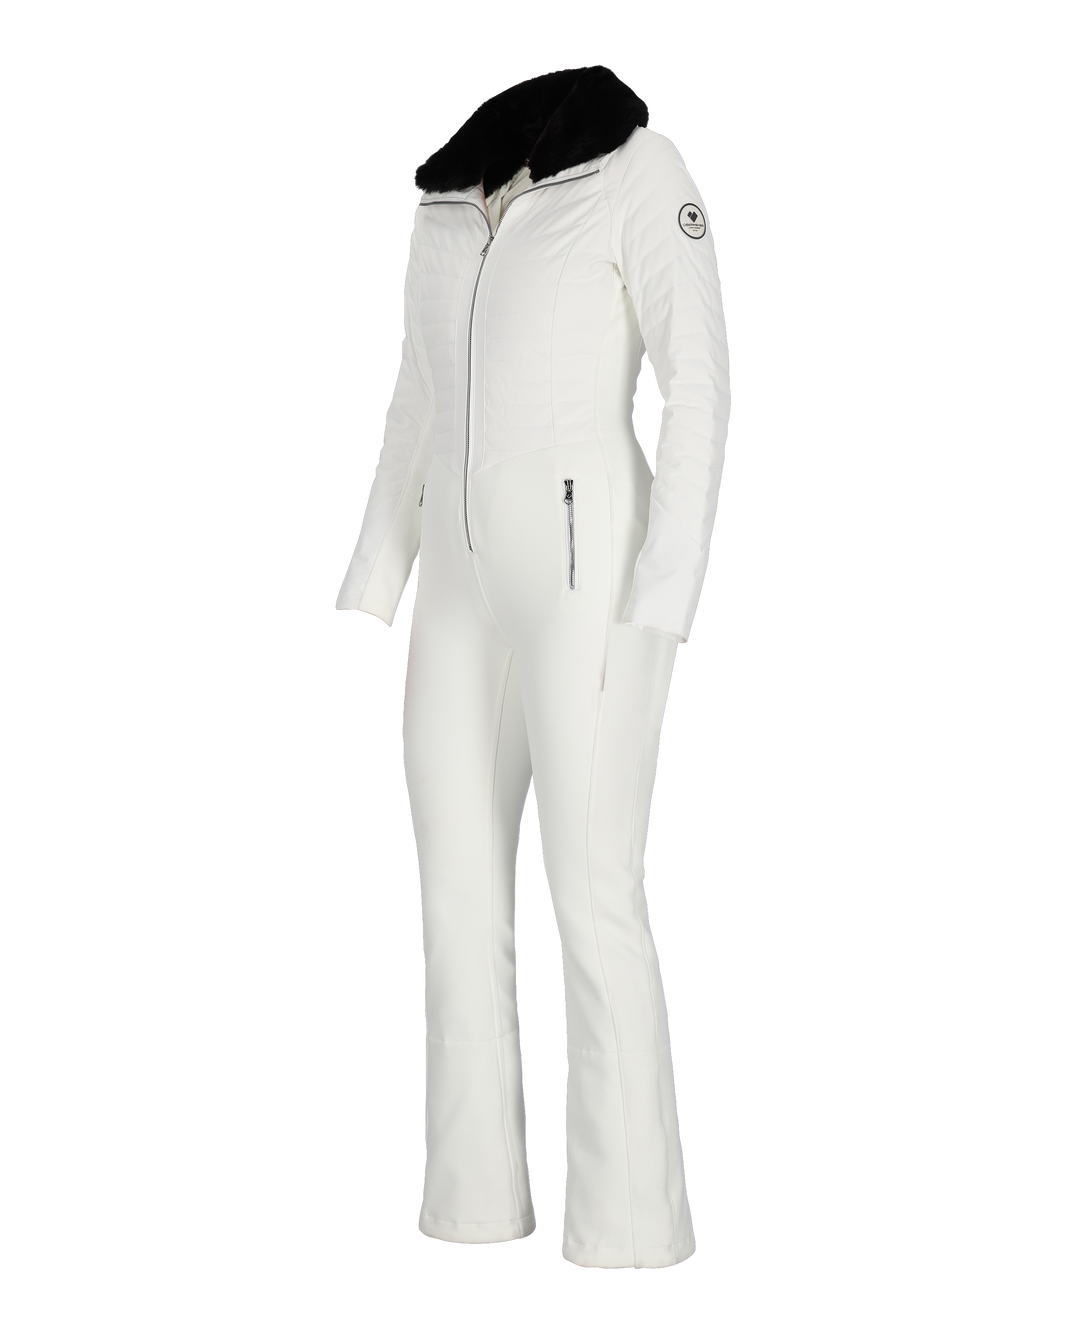 Katze Suit – Obermeyer